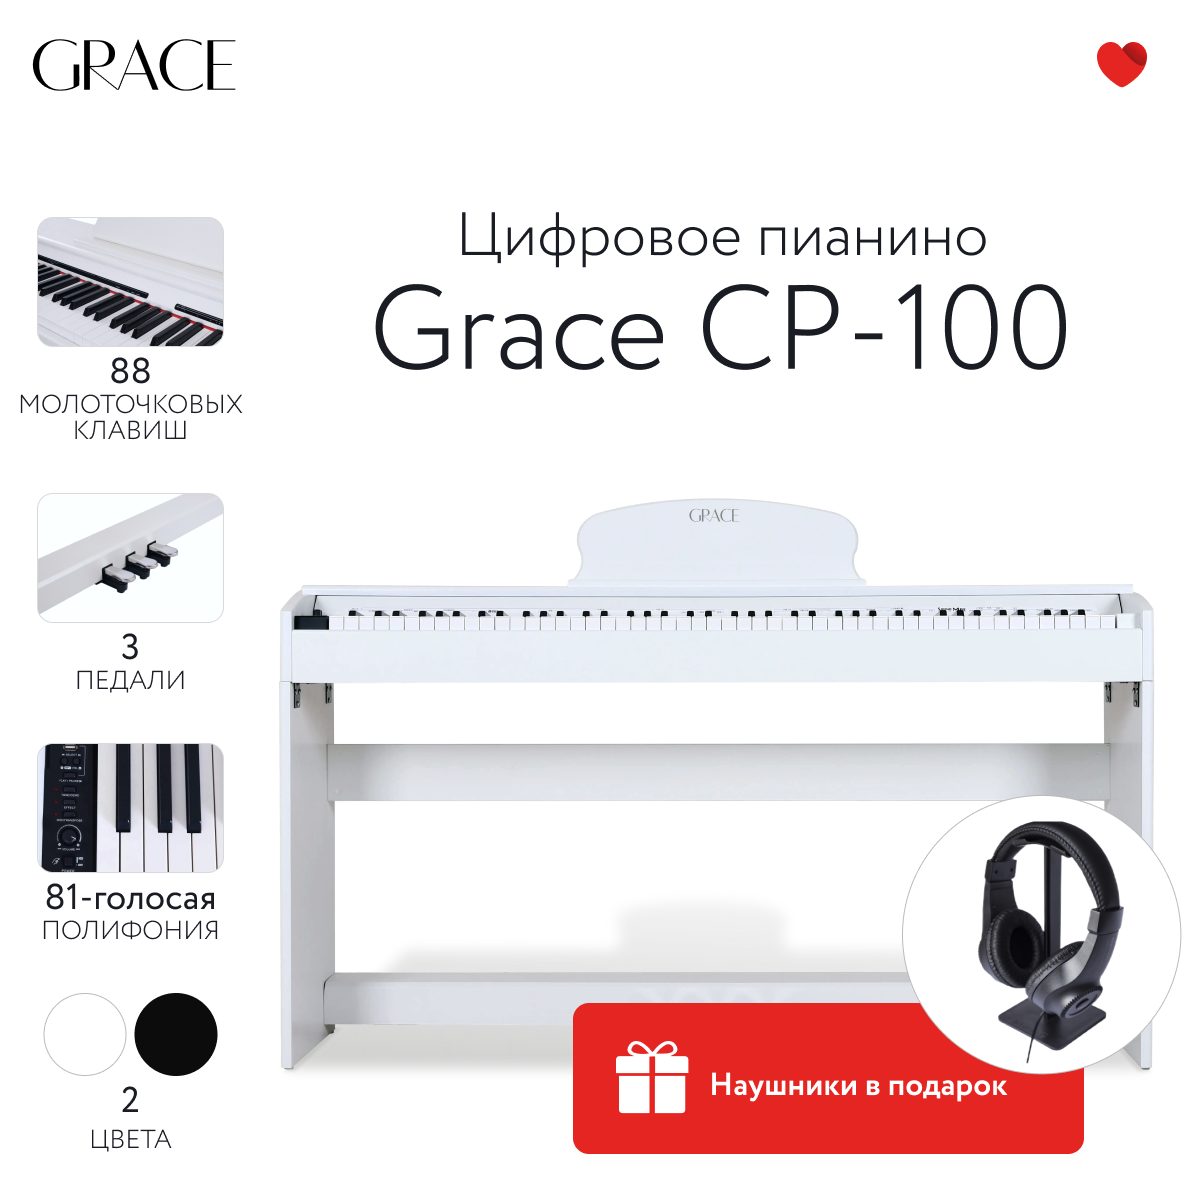 Цифровое пианино Grace CP-100 WH - белый, наушники в подарок